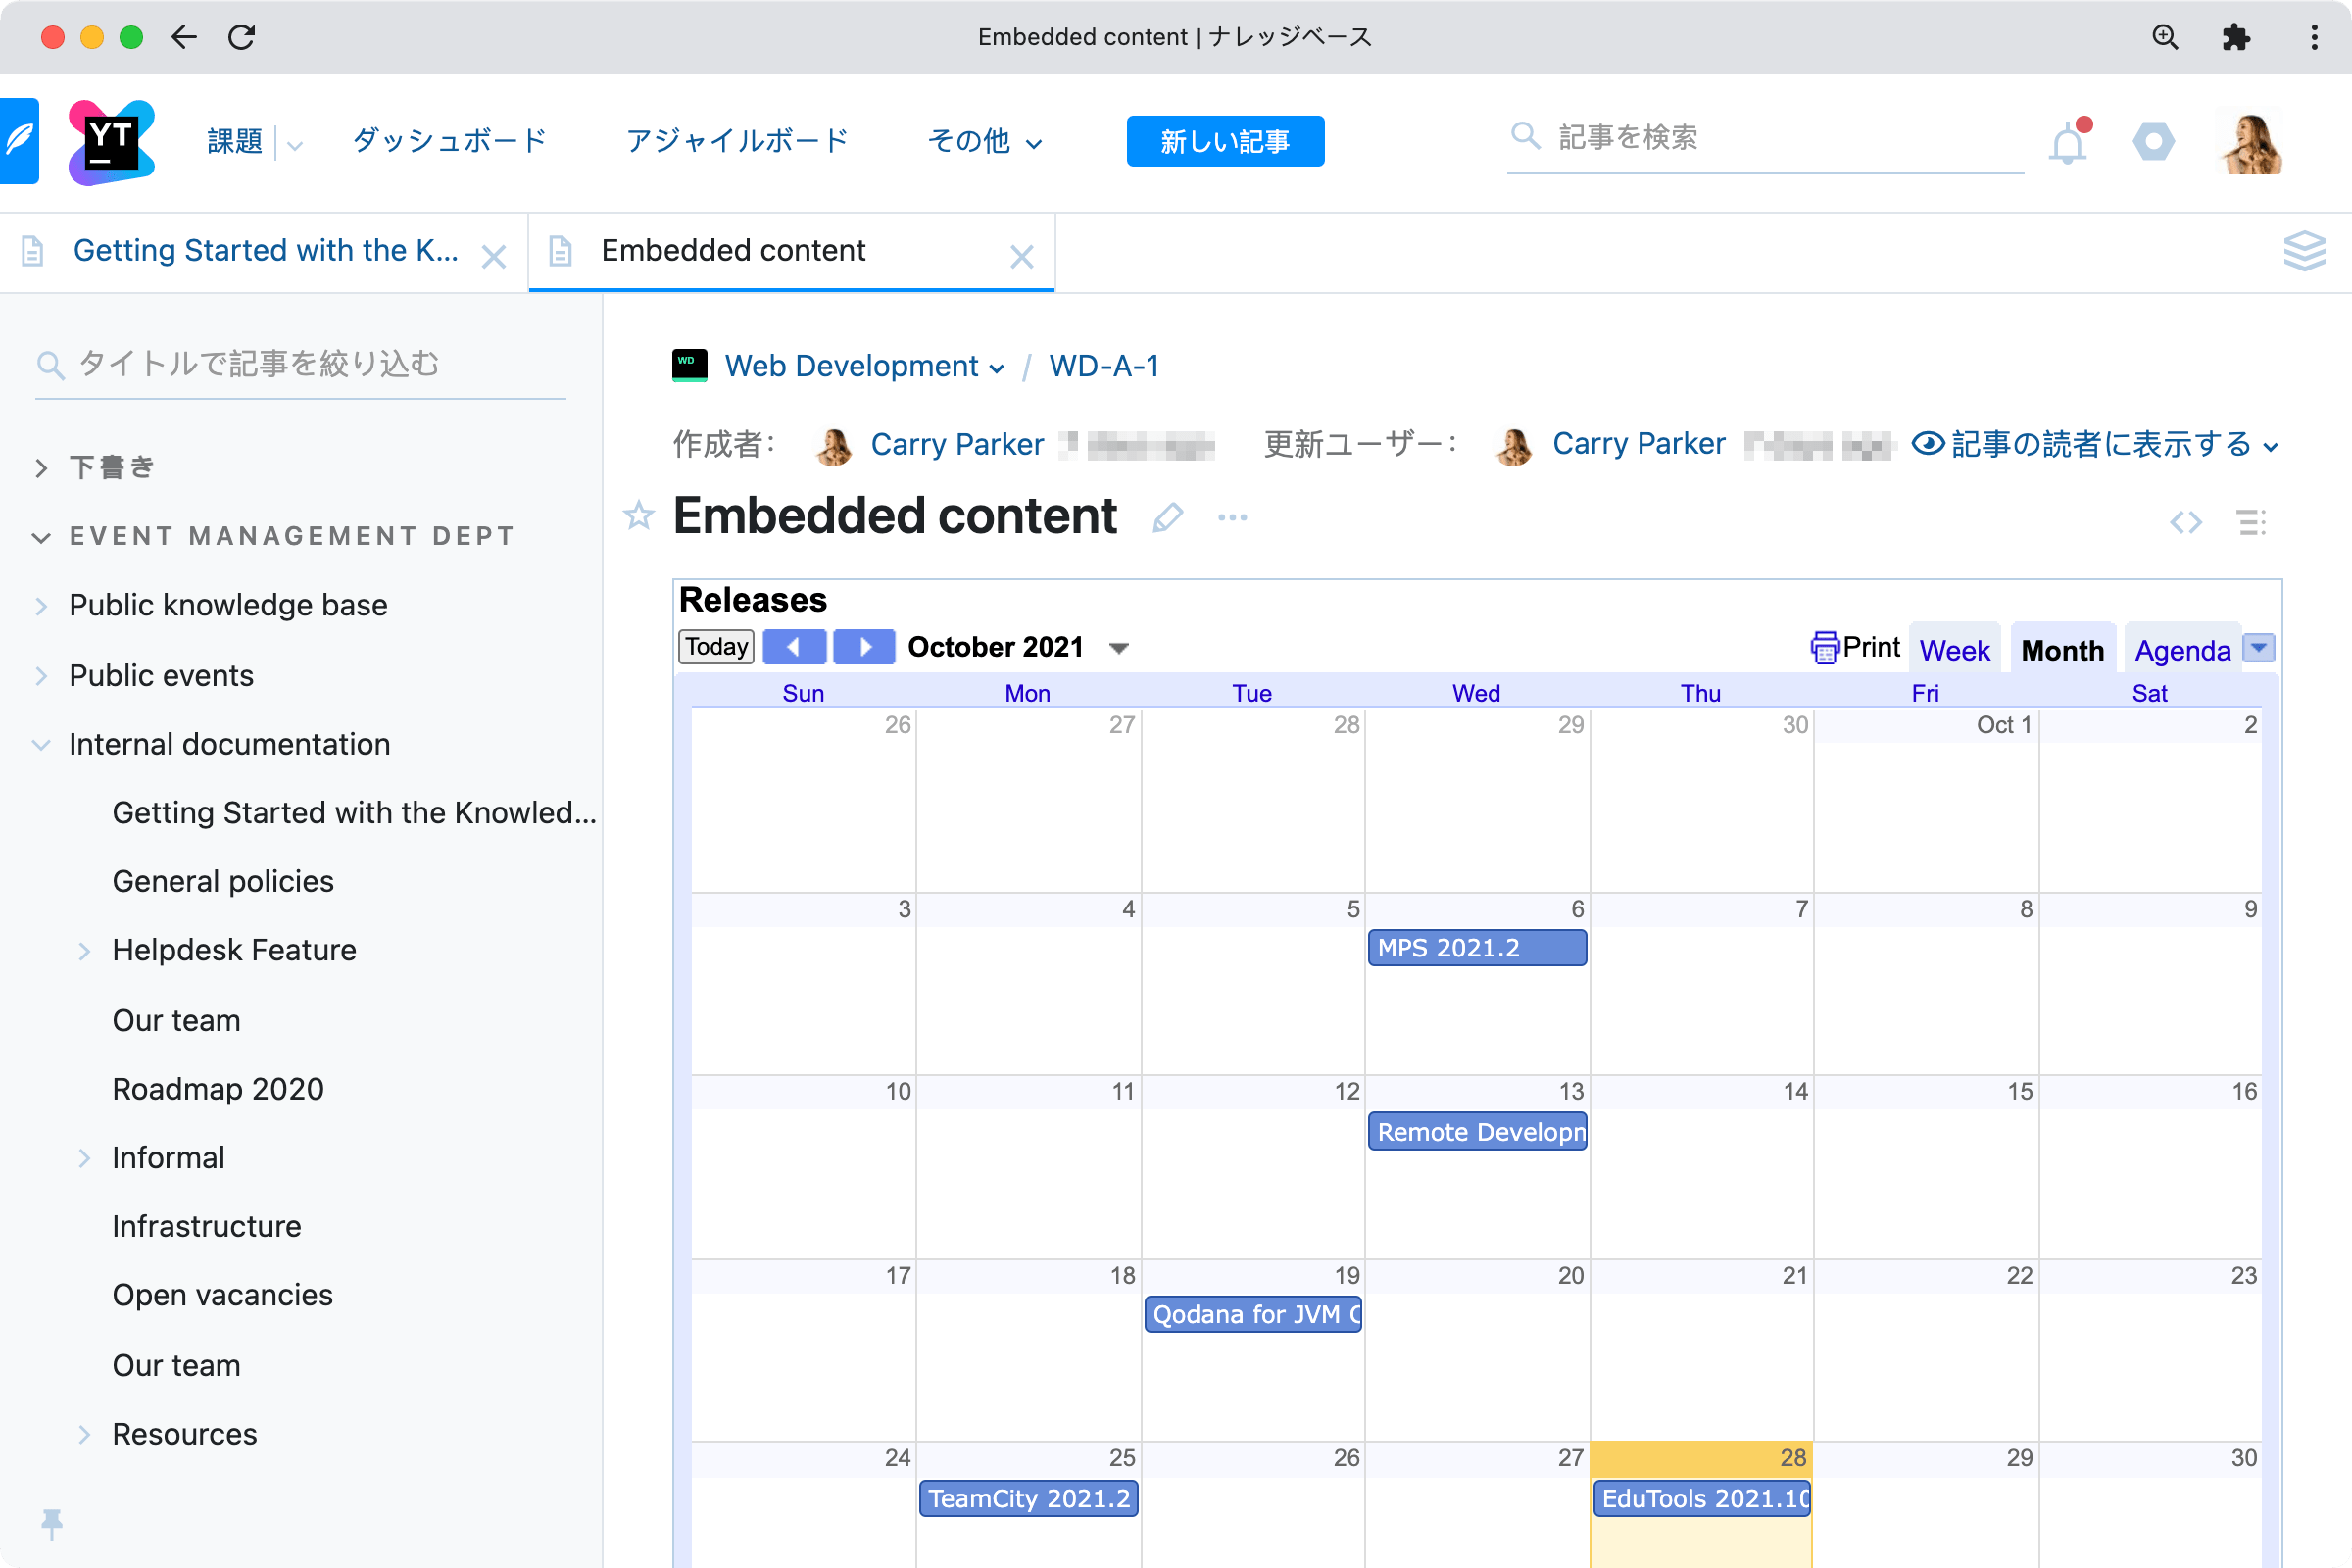 Figma のデザインと Google カレンダーの埋め込み